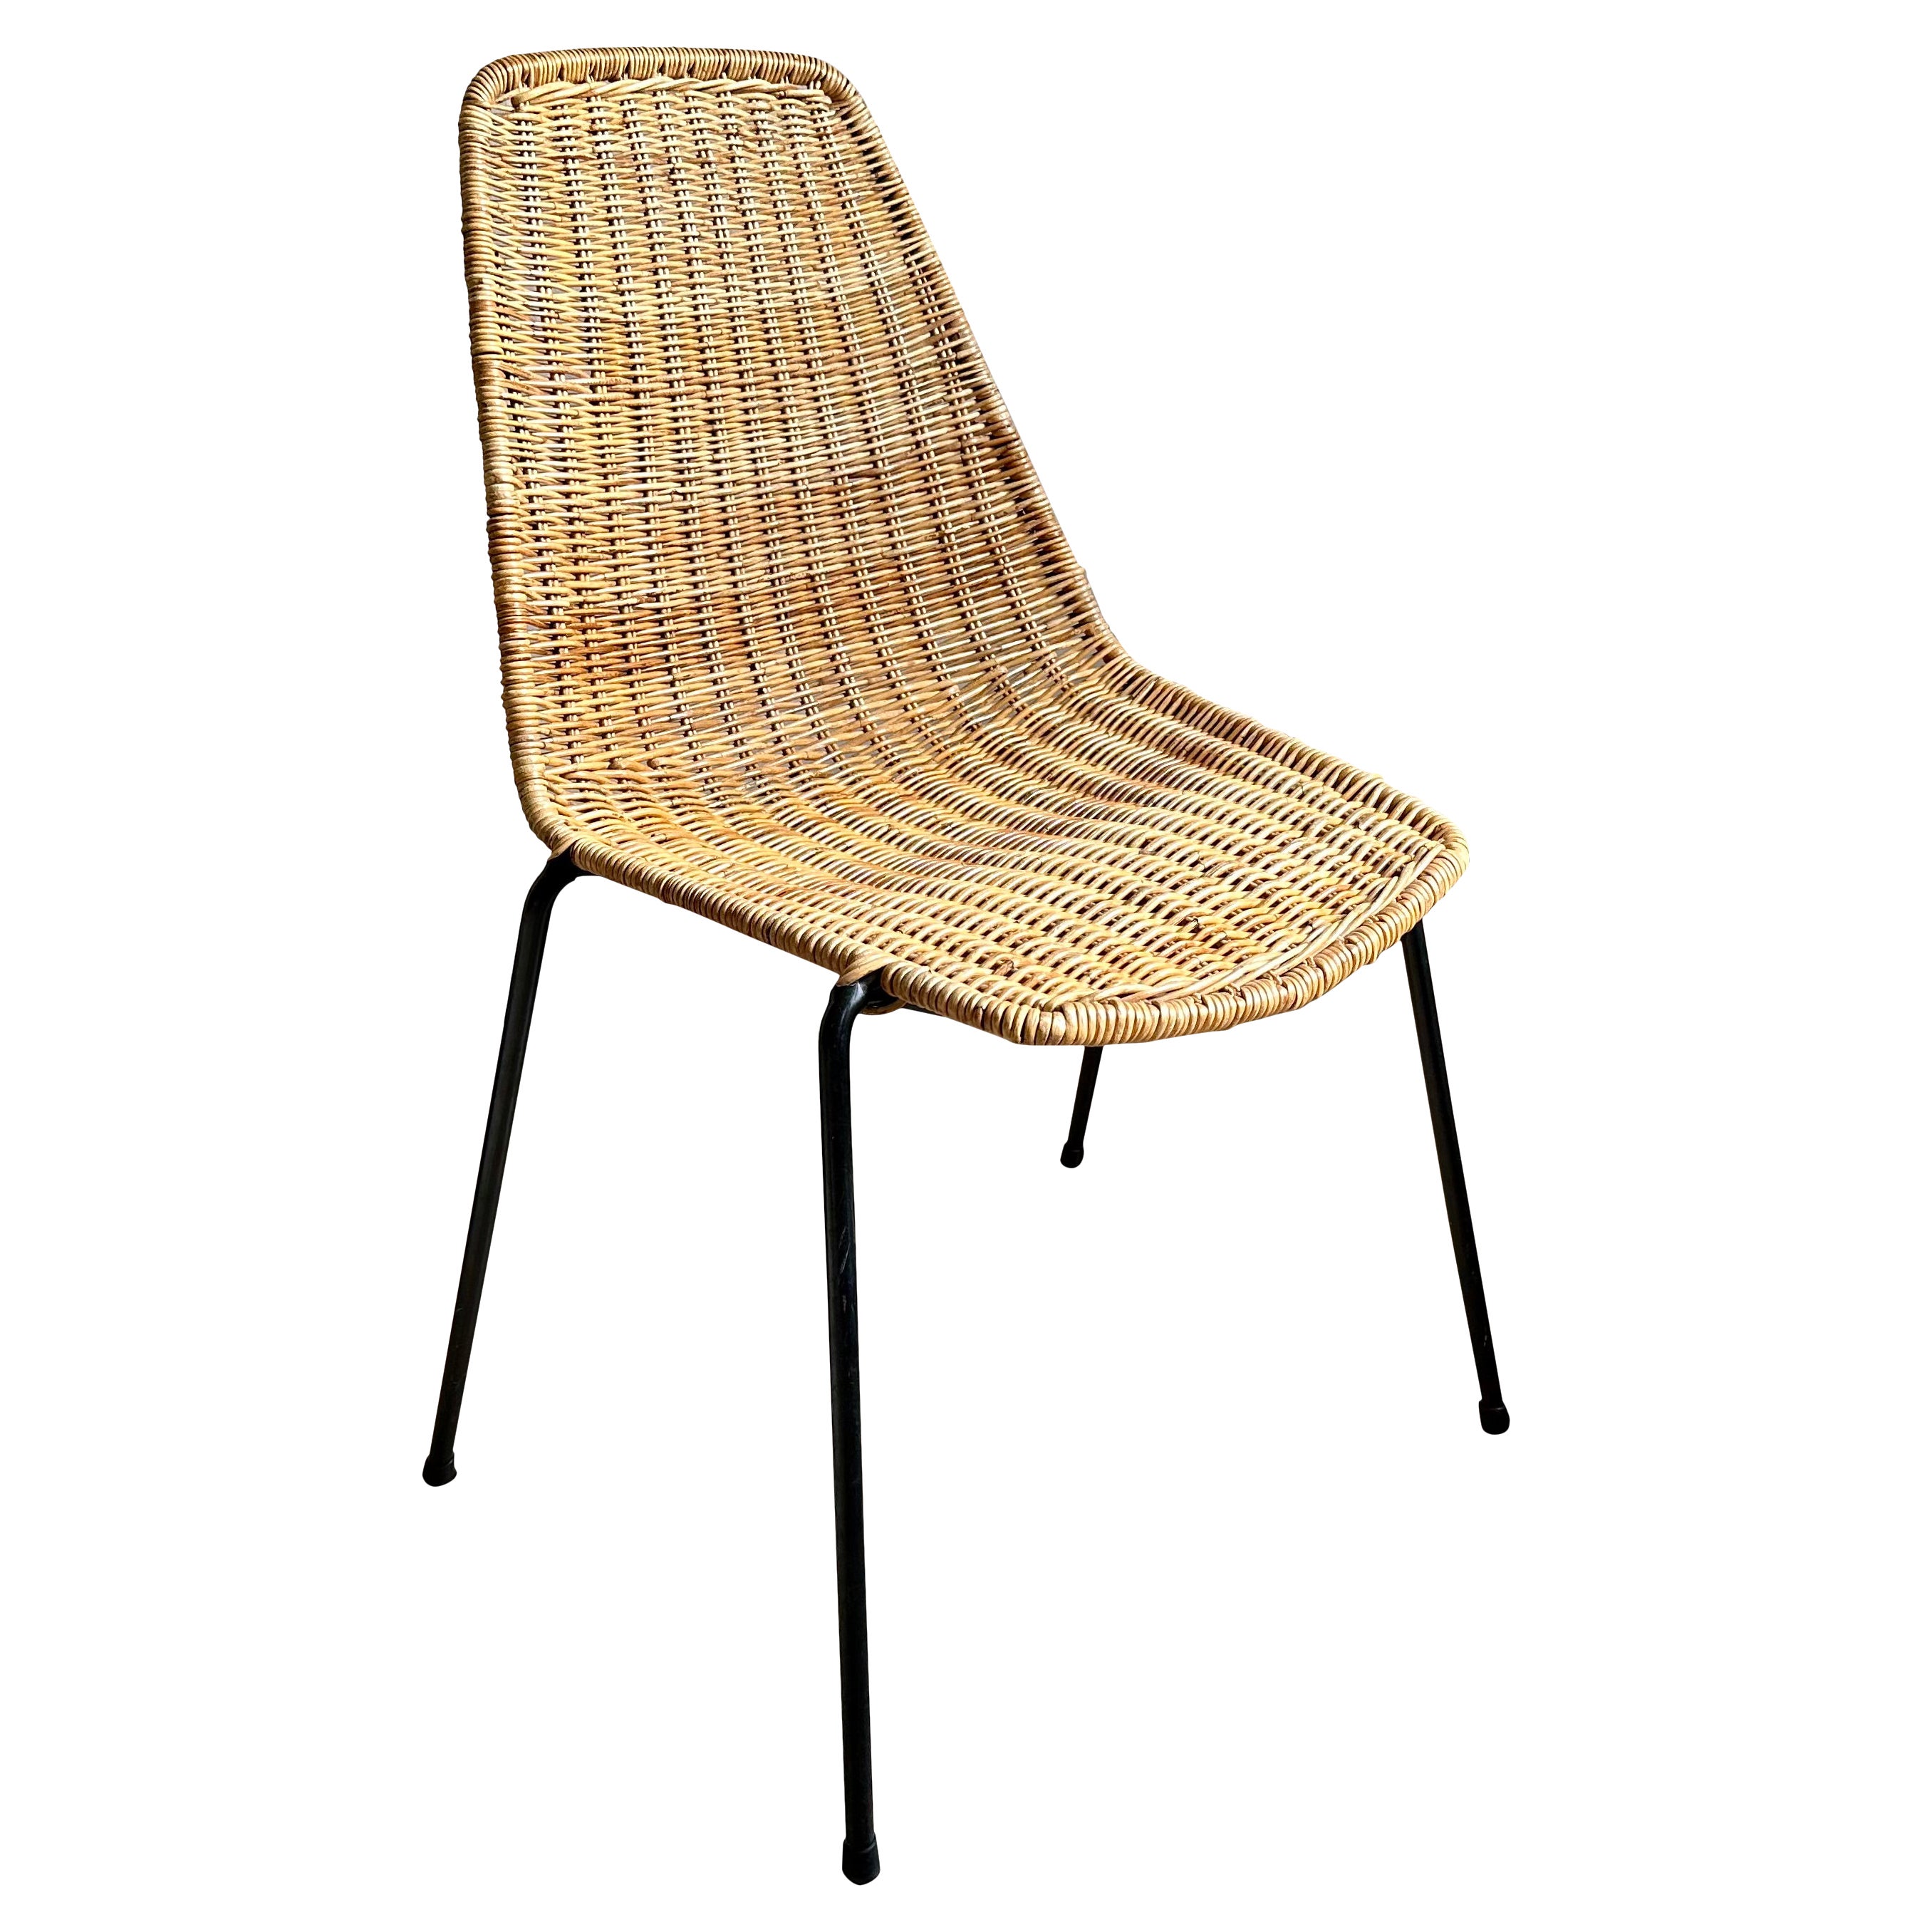 Timeless Elegance: Gian Franco Legler's Boho Basket Chair in Rattan For Sale